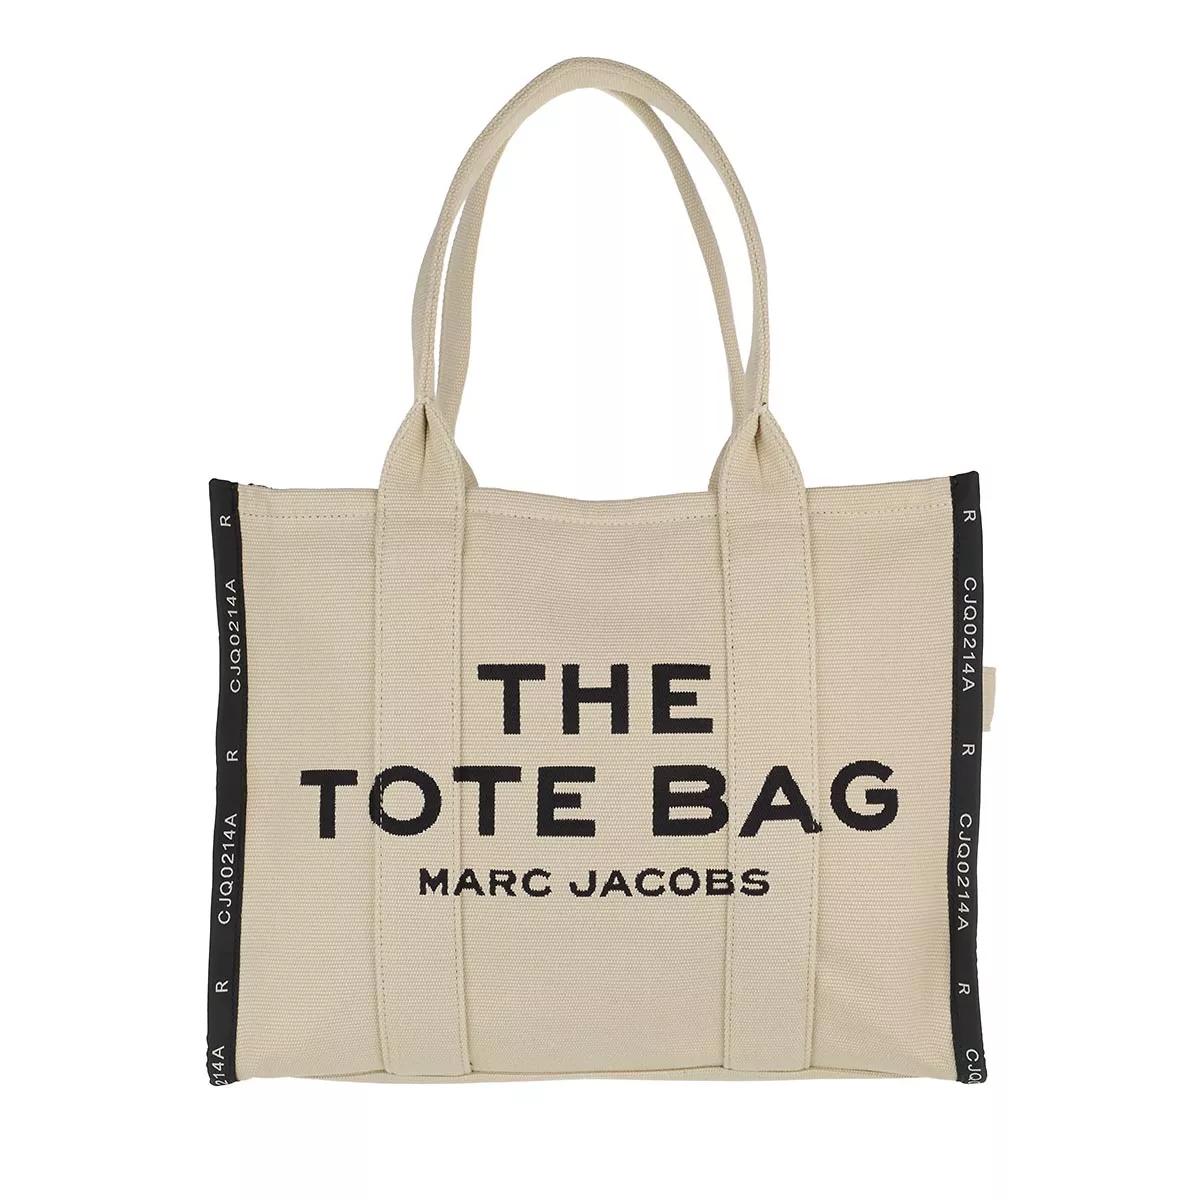 Marc Jacobs Taschen, Portemonnaies & Uhren